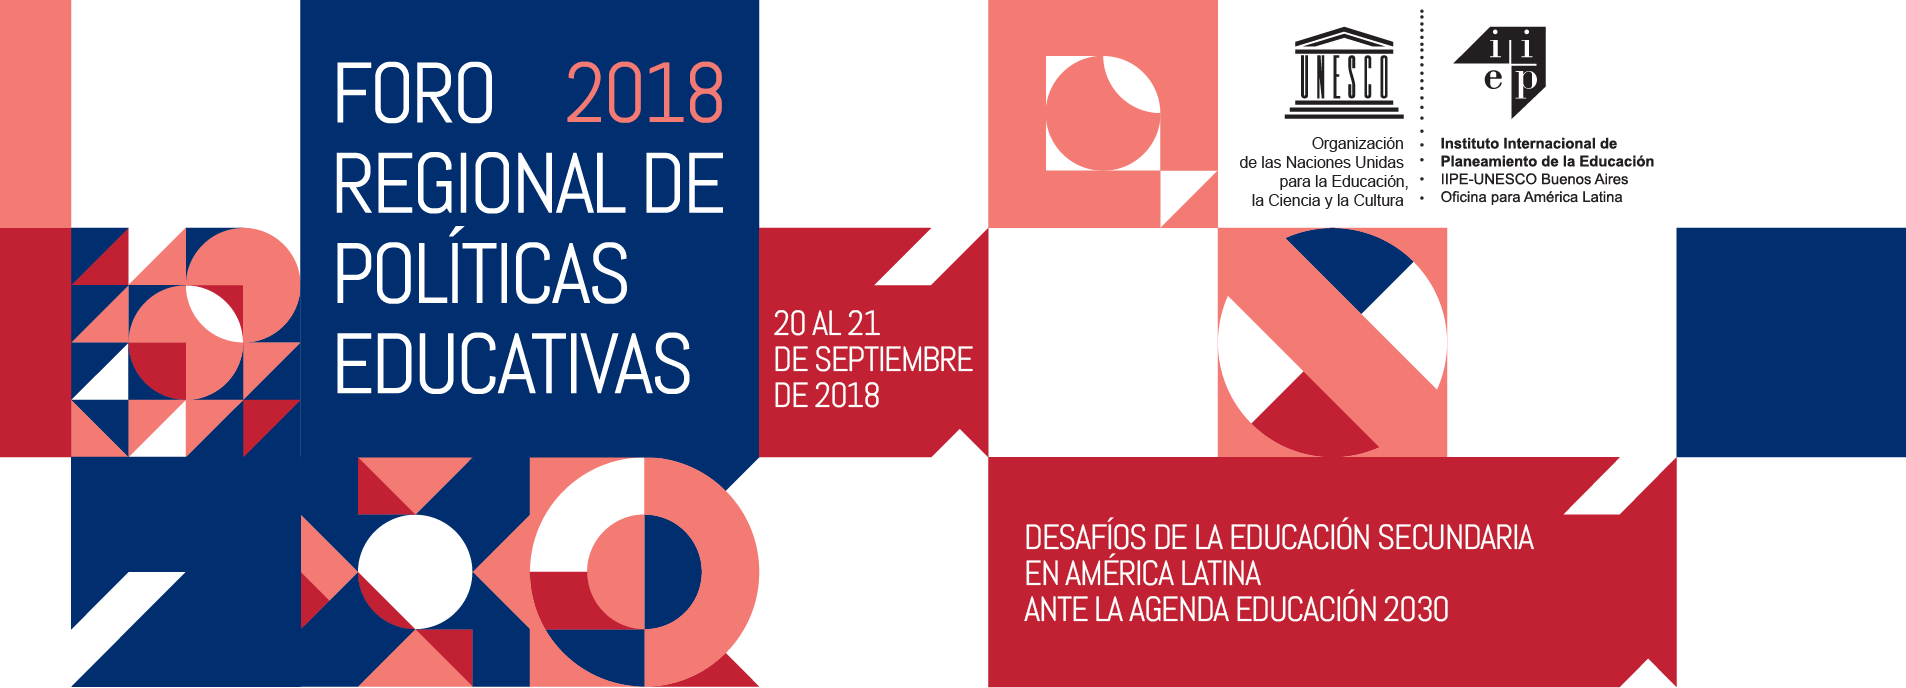 Foro 2018 Regional de Políticas Educativas. 20 al 21 de septiembre de 2018.